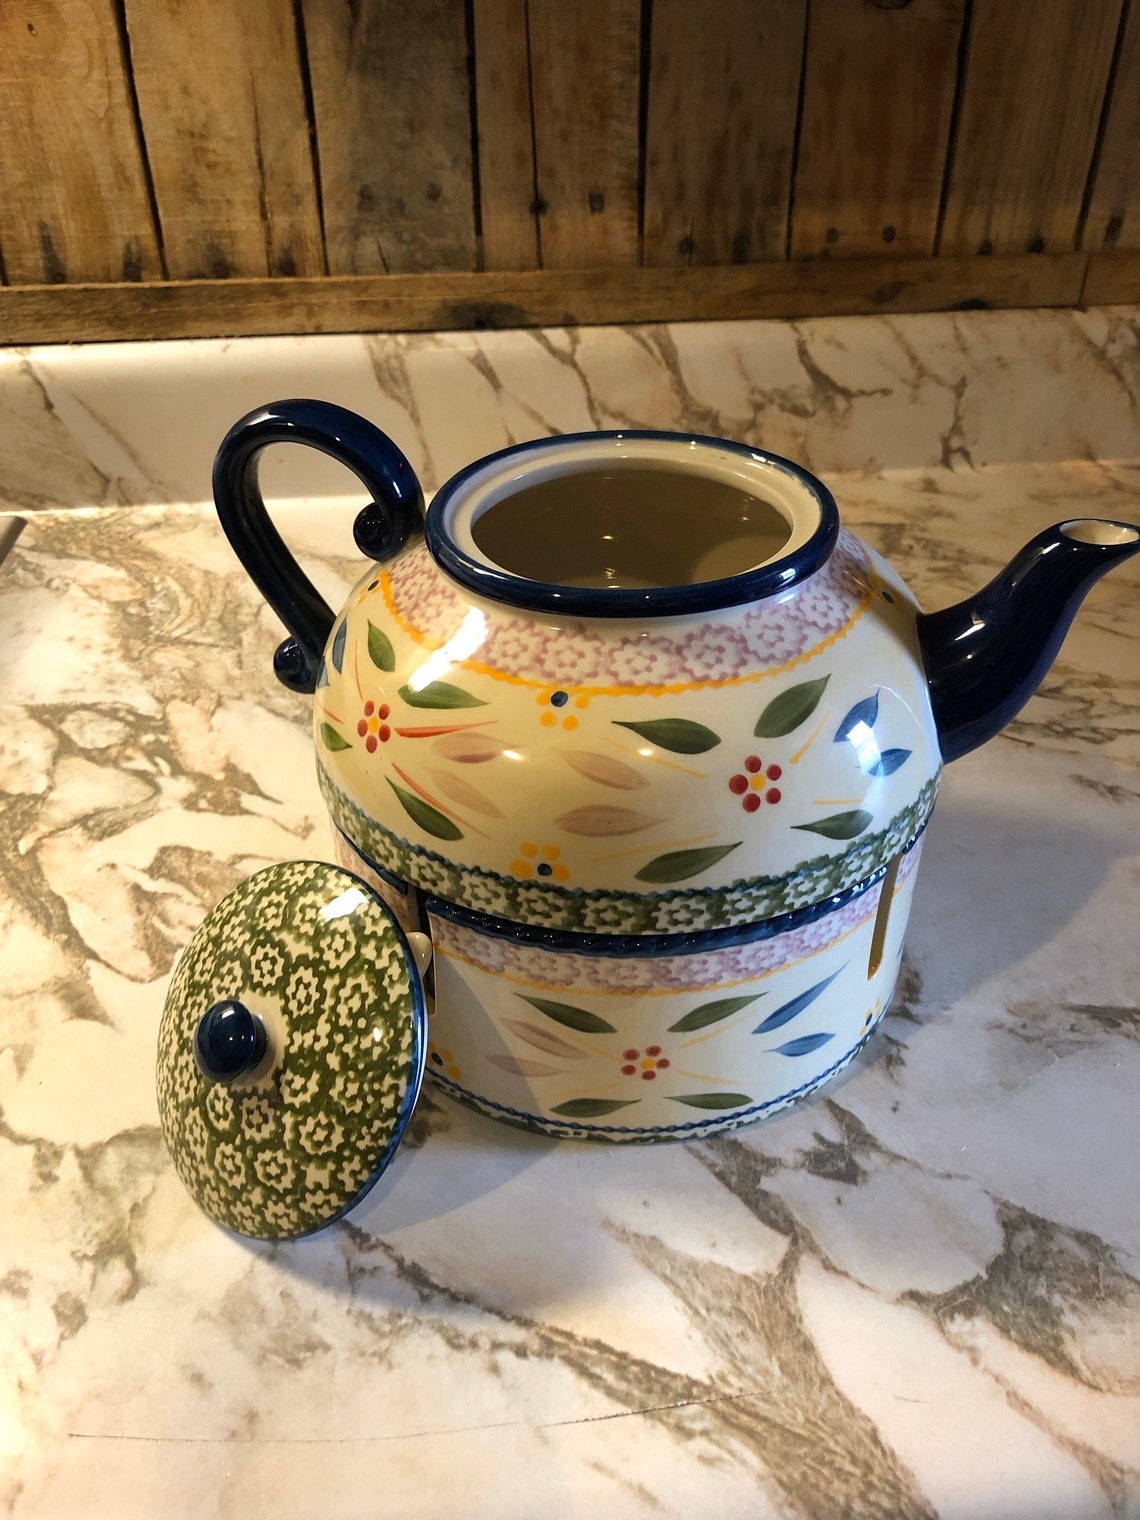 Temptations Tea Pot by Tara Old World Style | Etsy